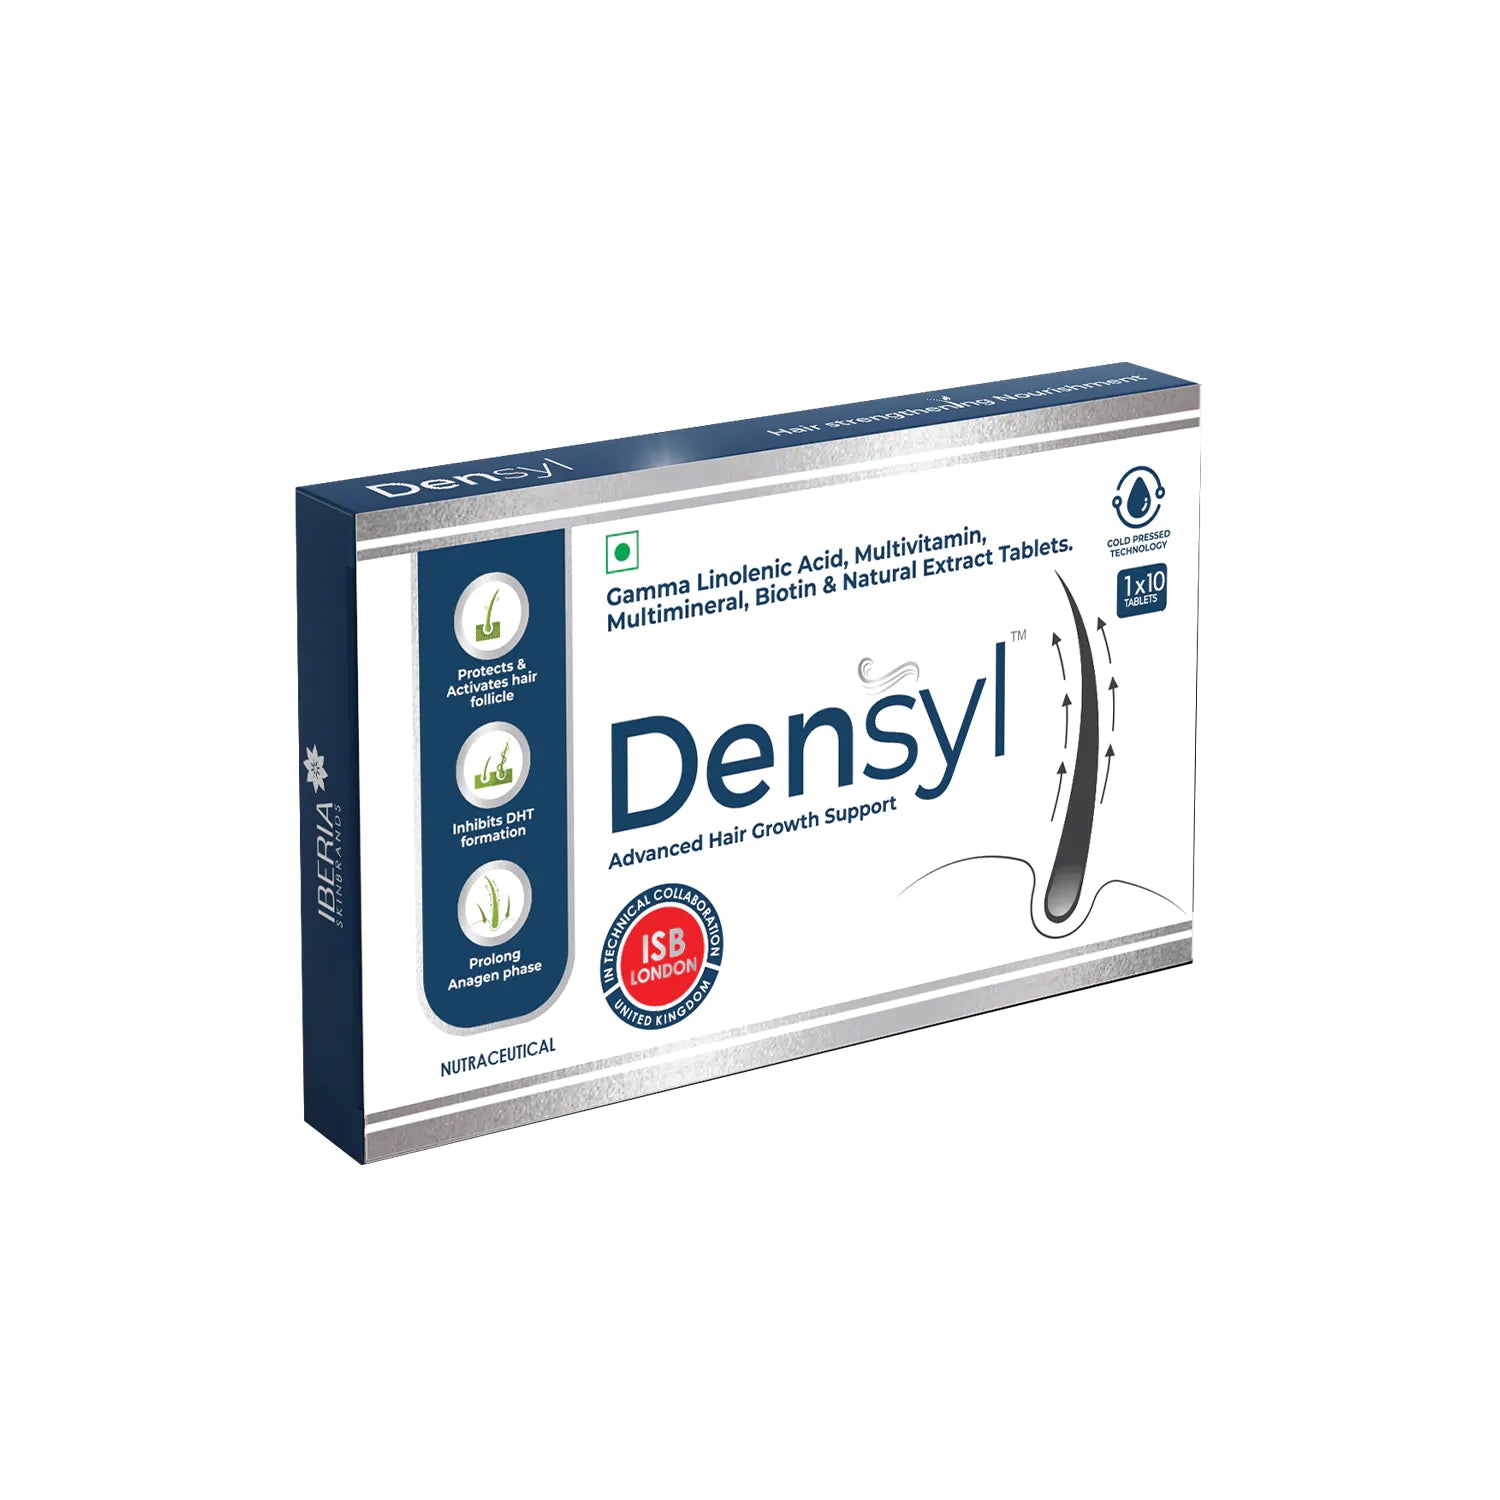 Densyl Advanced Hair Growth Tablet